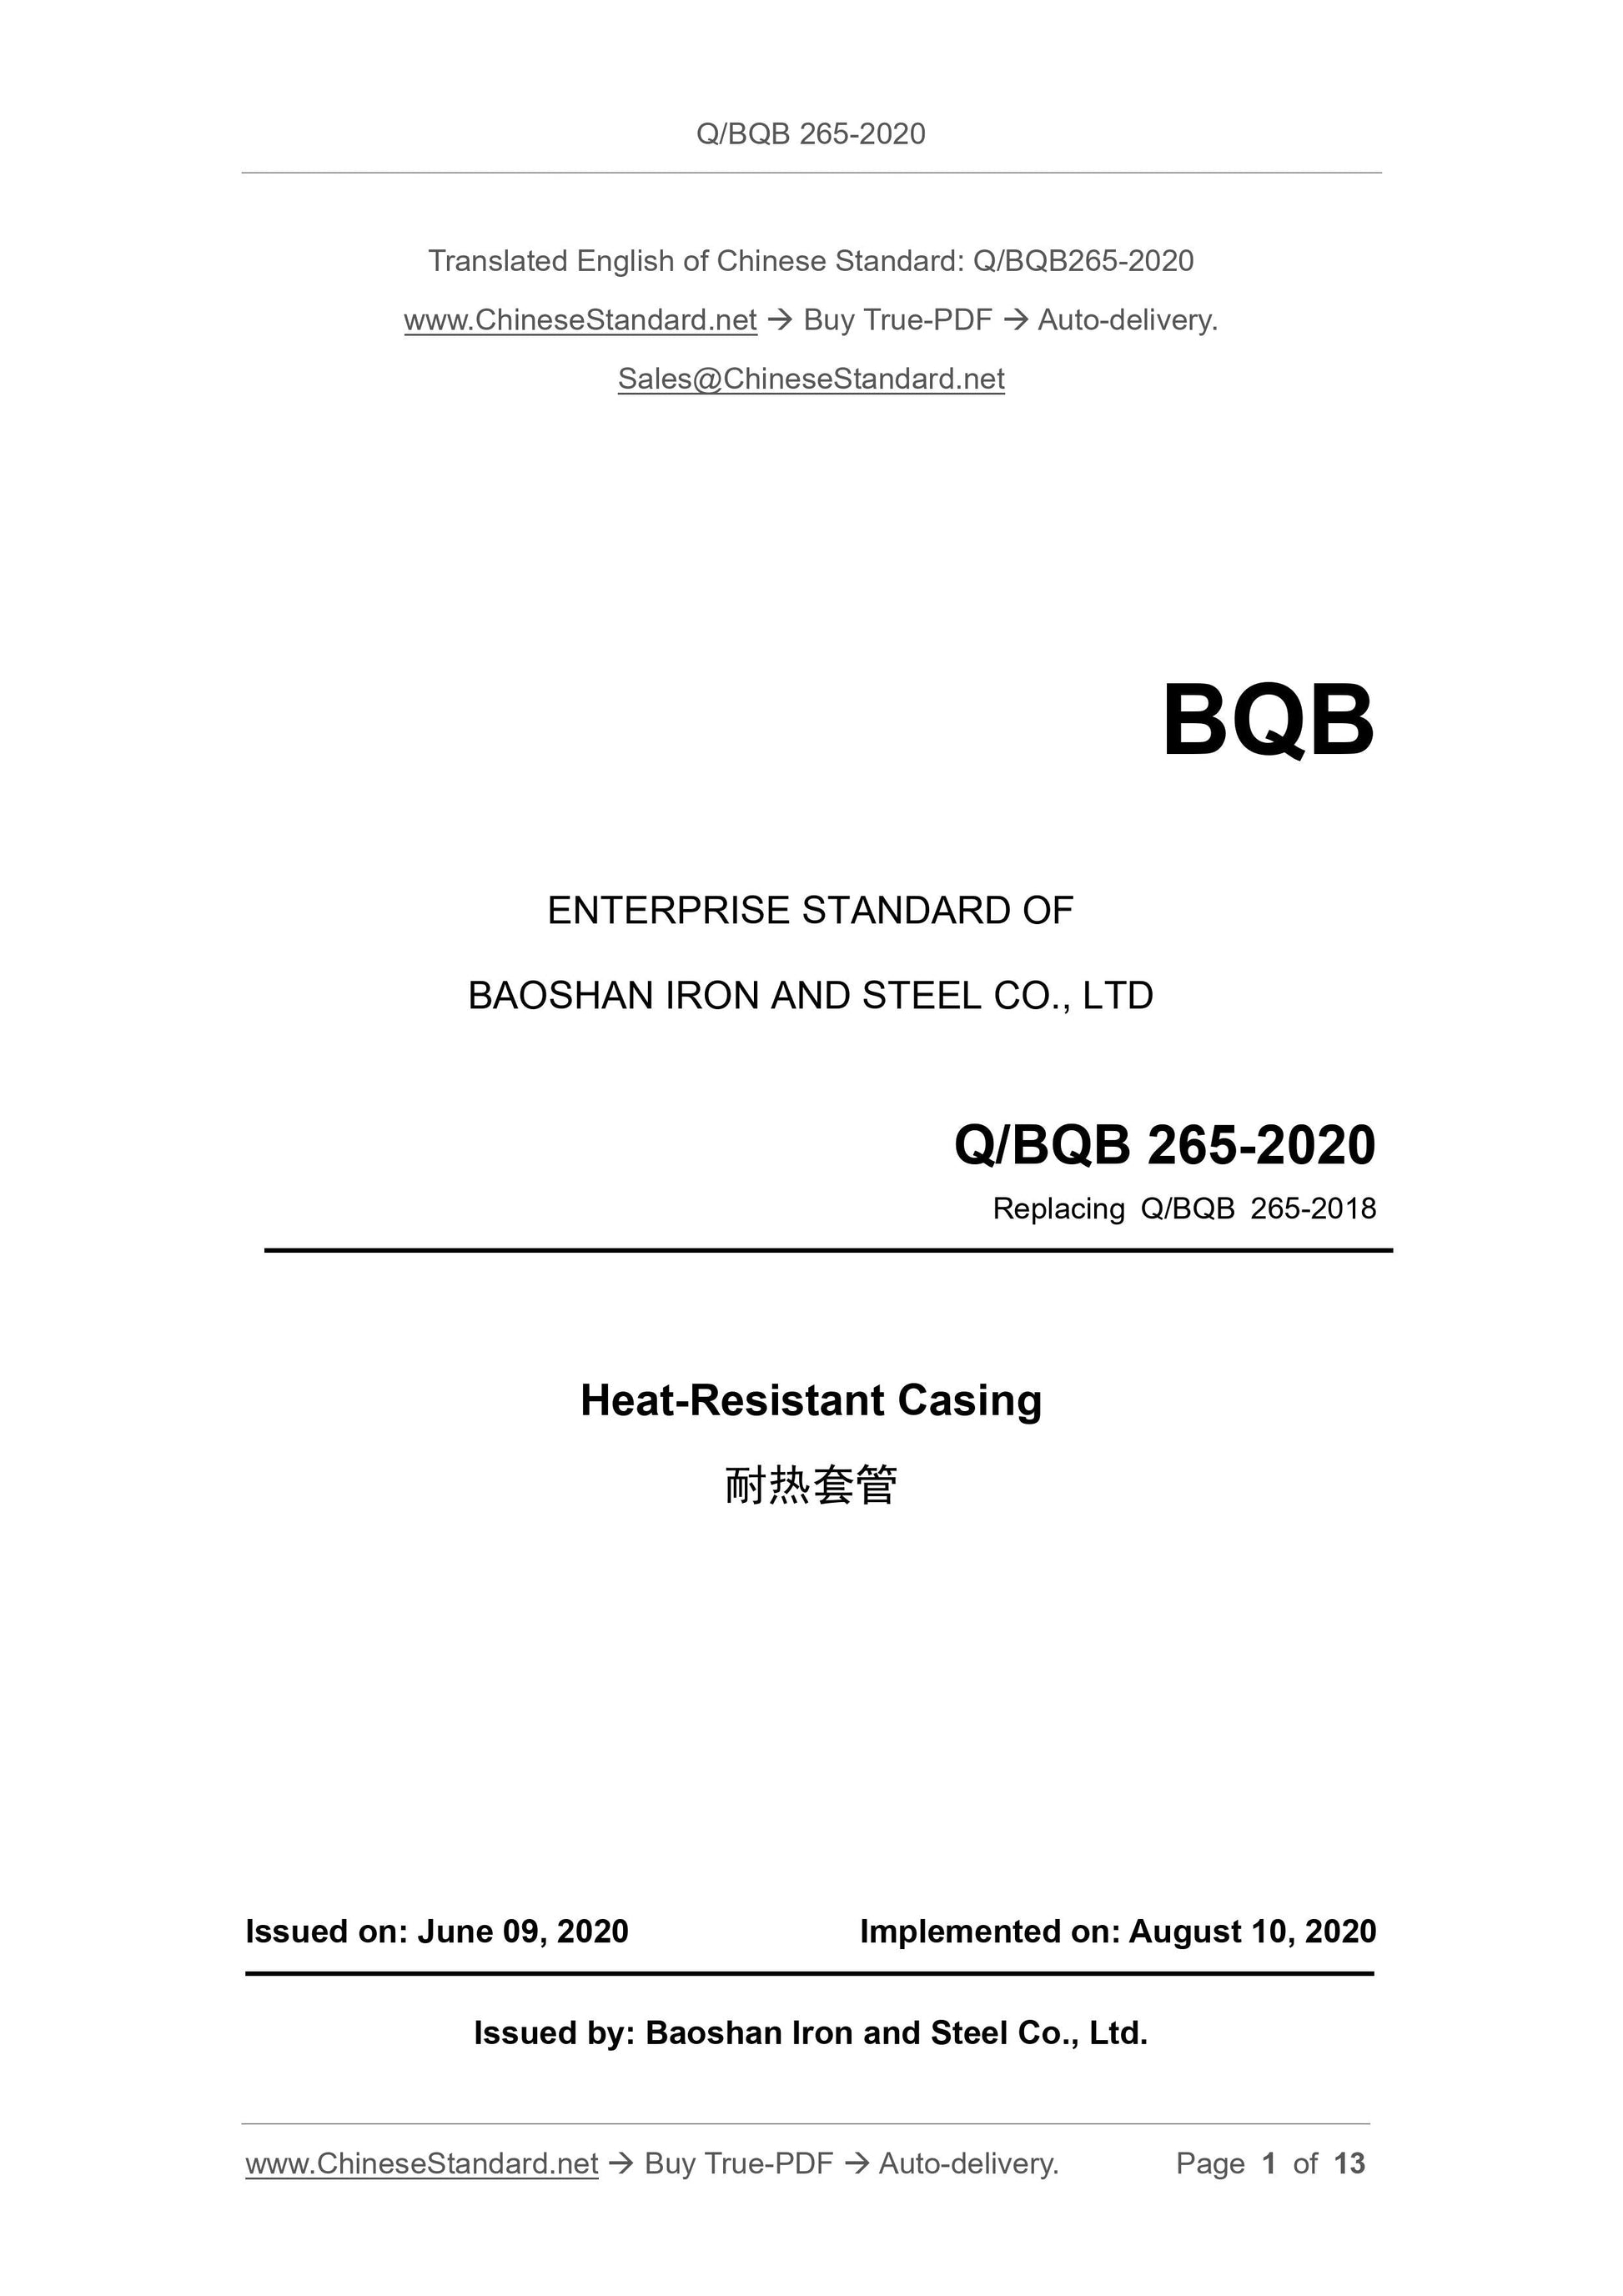 Q/BQB 265-2020 Page 1